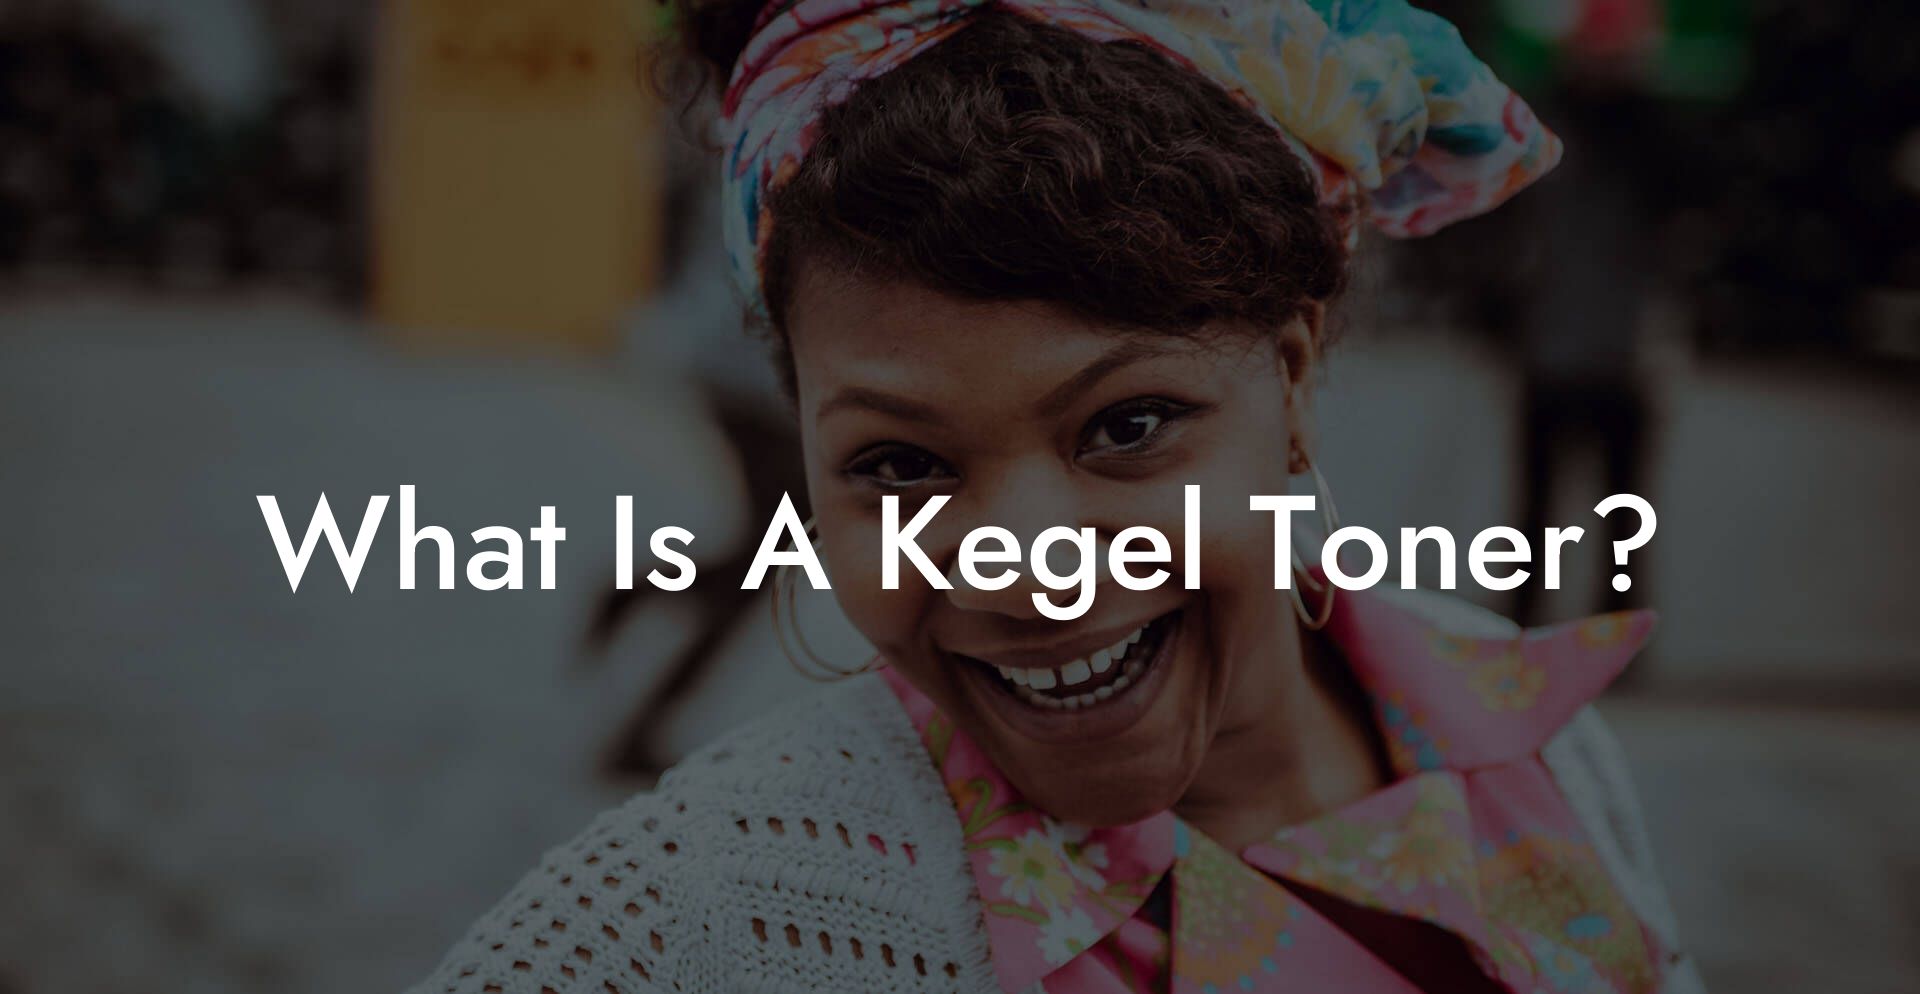 What Is A Kegel Toner?